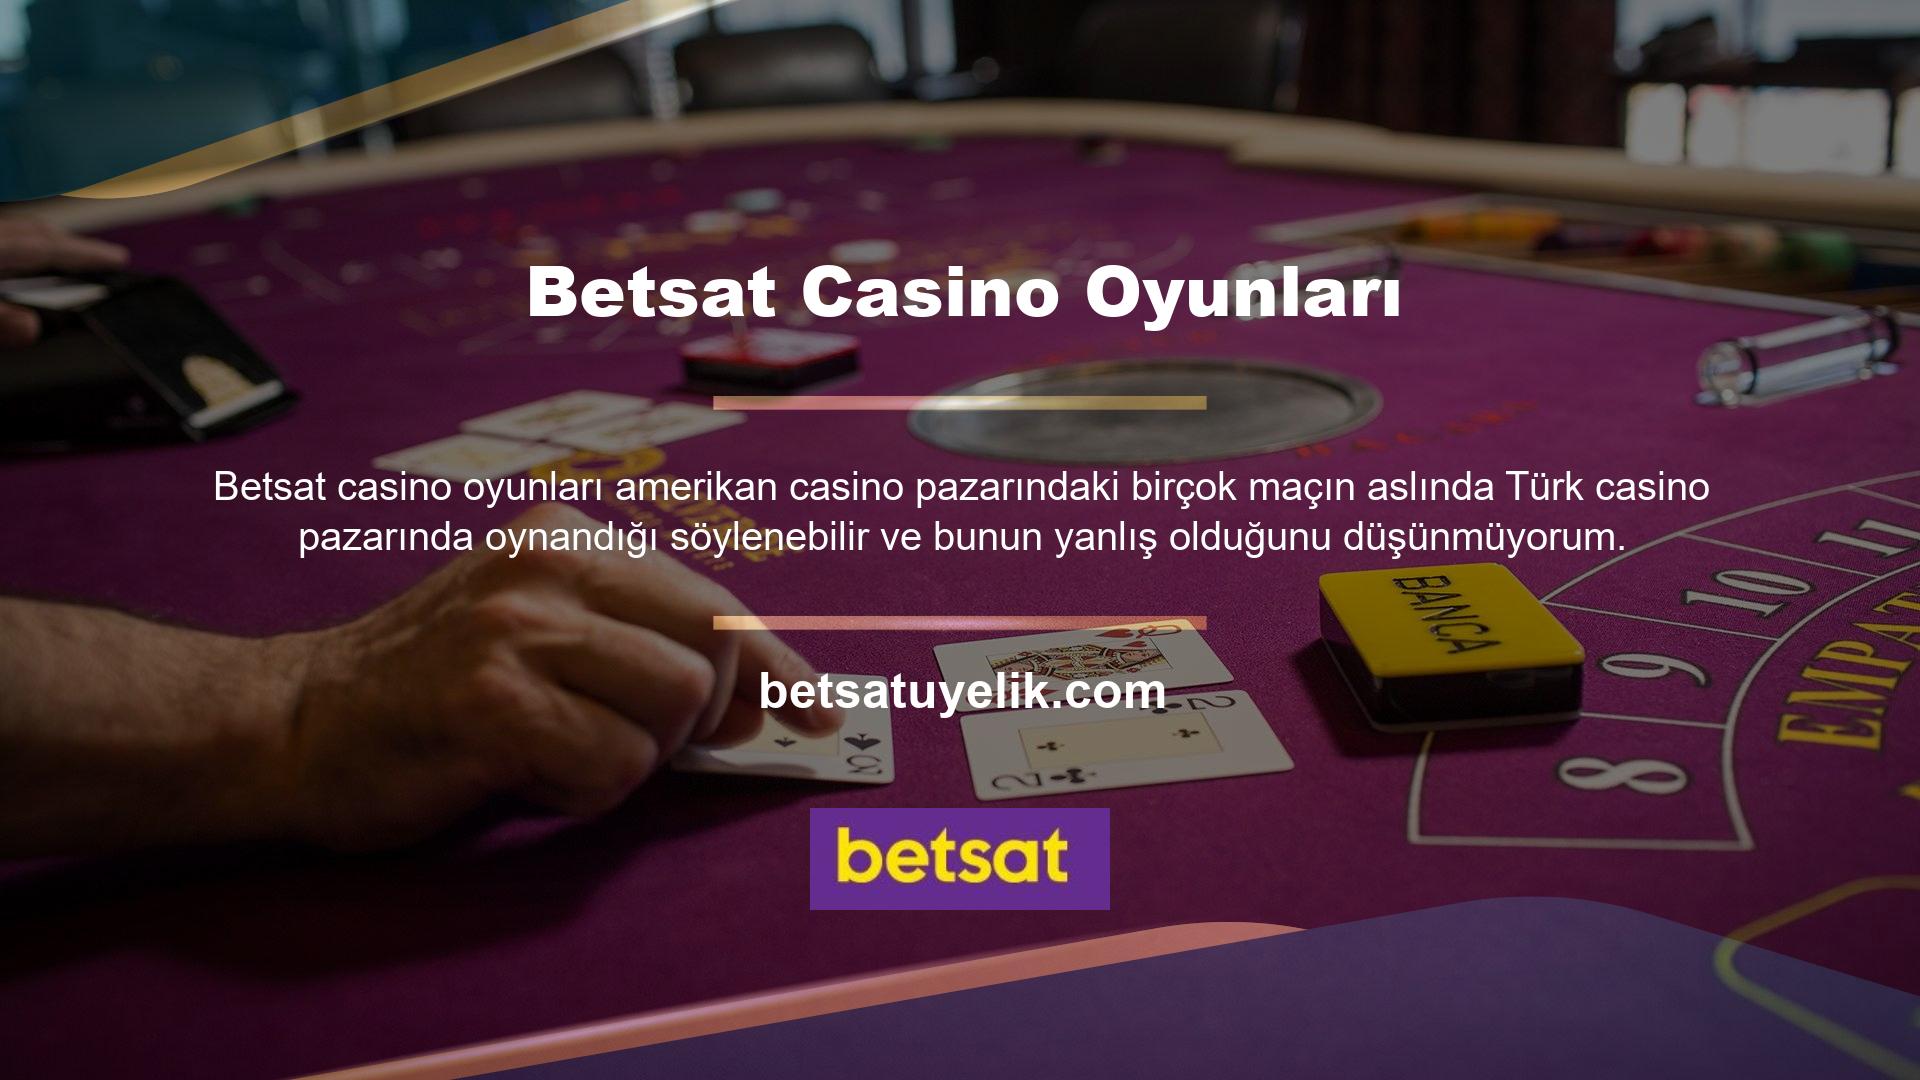 Çünkü Türk casino pazarı aslında Amerikan casino oyunlarını ve hatta Amerikan casino kültürünü tercih ediyor